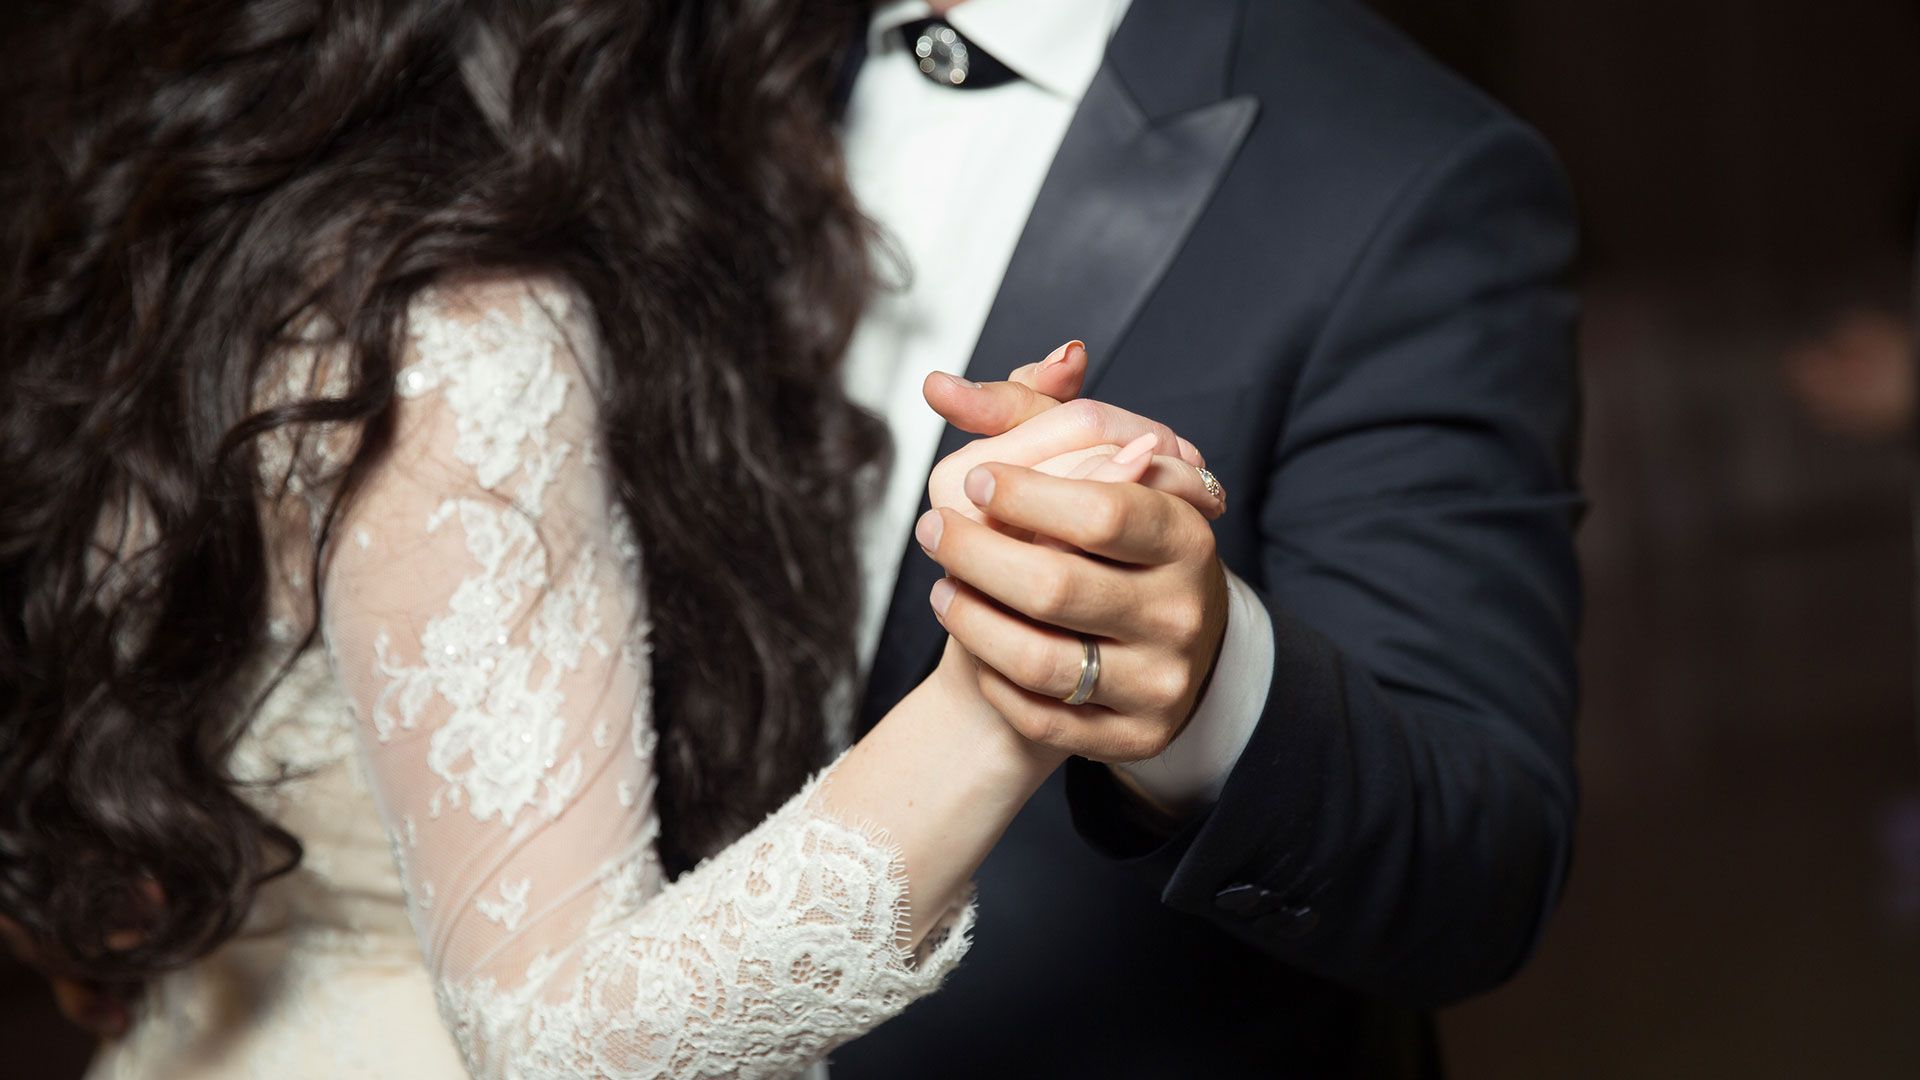 Promotional image for Допустим ли танец жениха и невесты на христианских свадьбах?